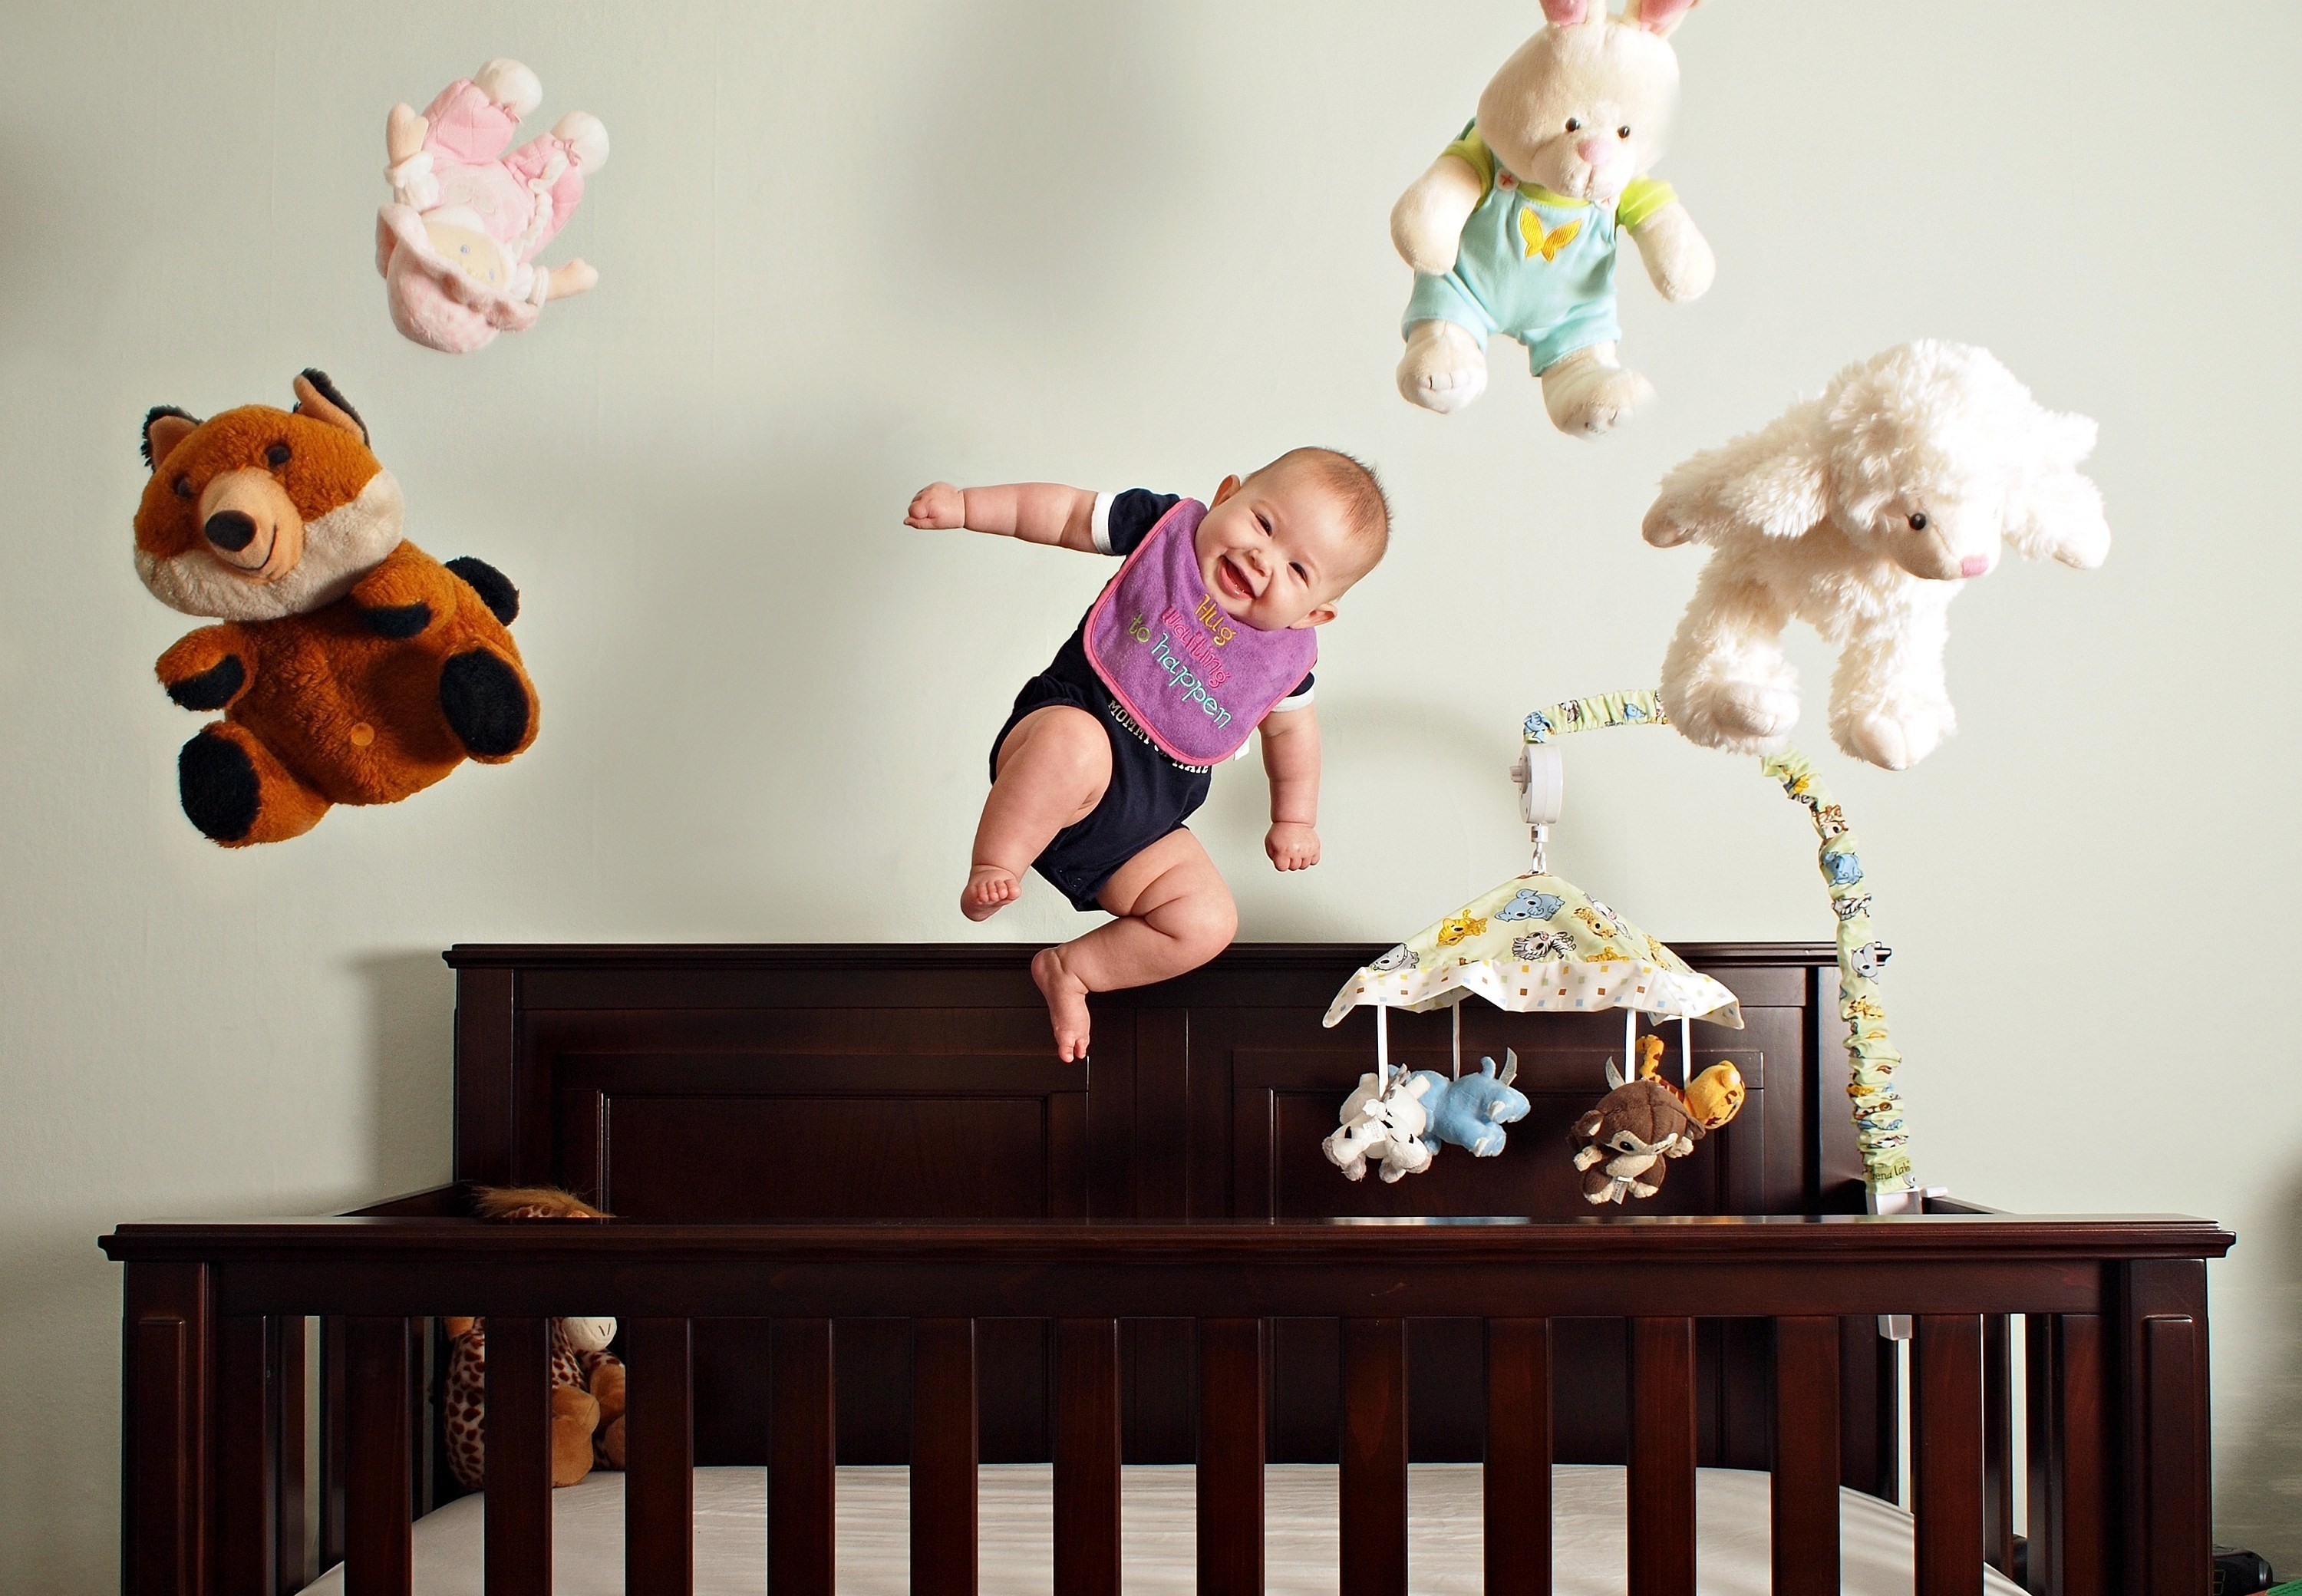 Скачать обои бесплатно Юмор, Медведь, Милый, Настроение, Младенец картинка на рабочий стол ПК